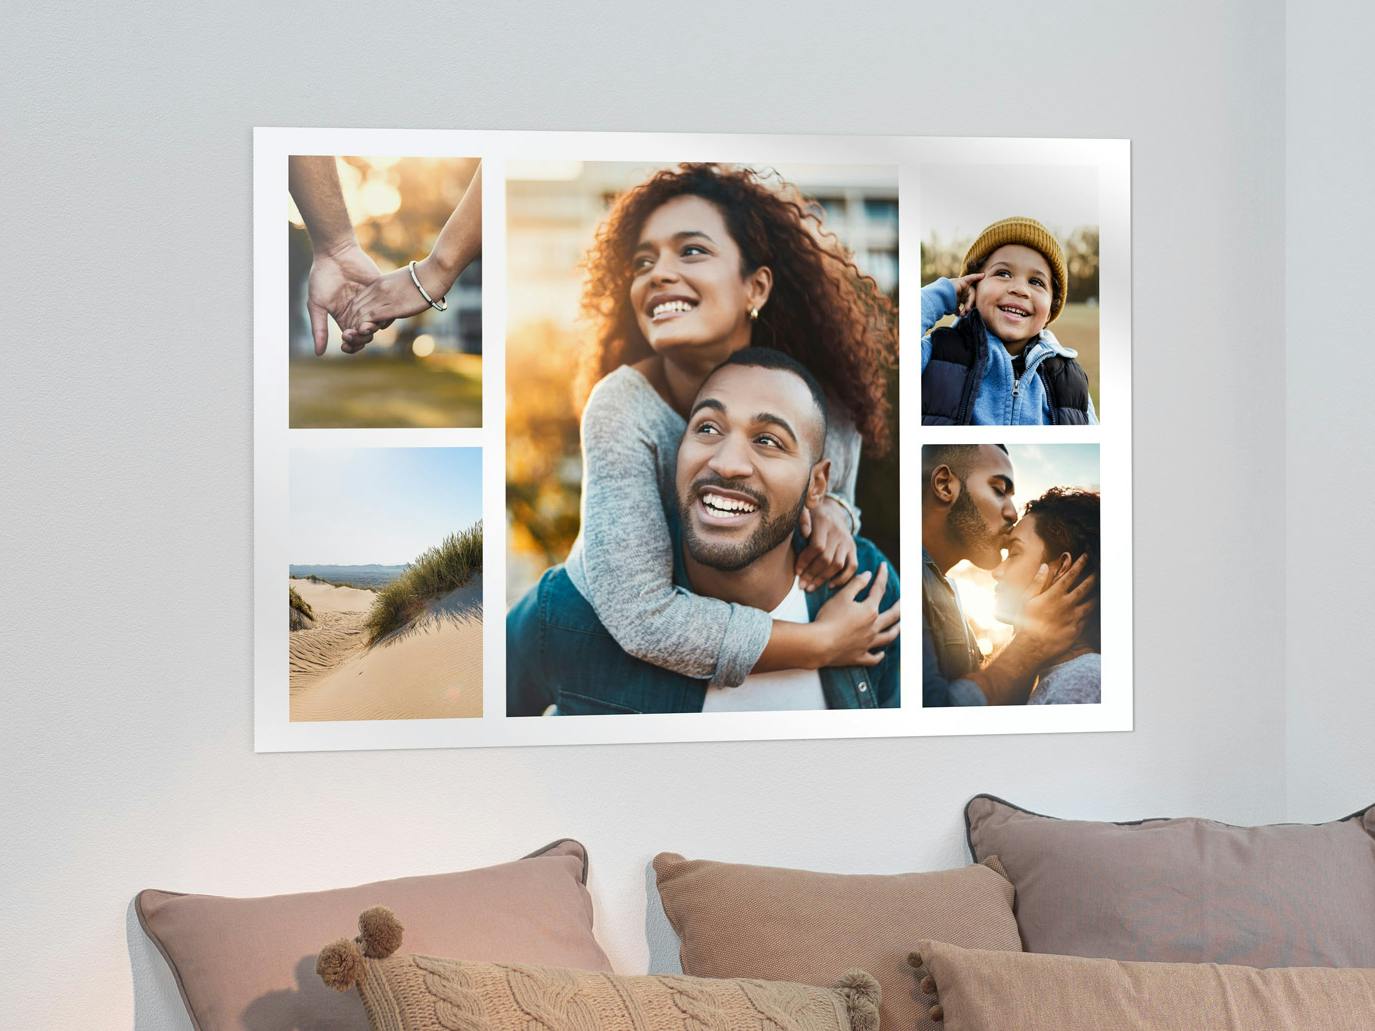 Fotoposter als Collage mit Pärchenbildern an einer Wand im Wohnzimmer